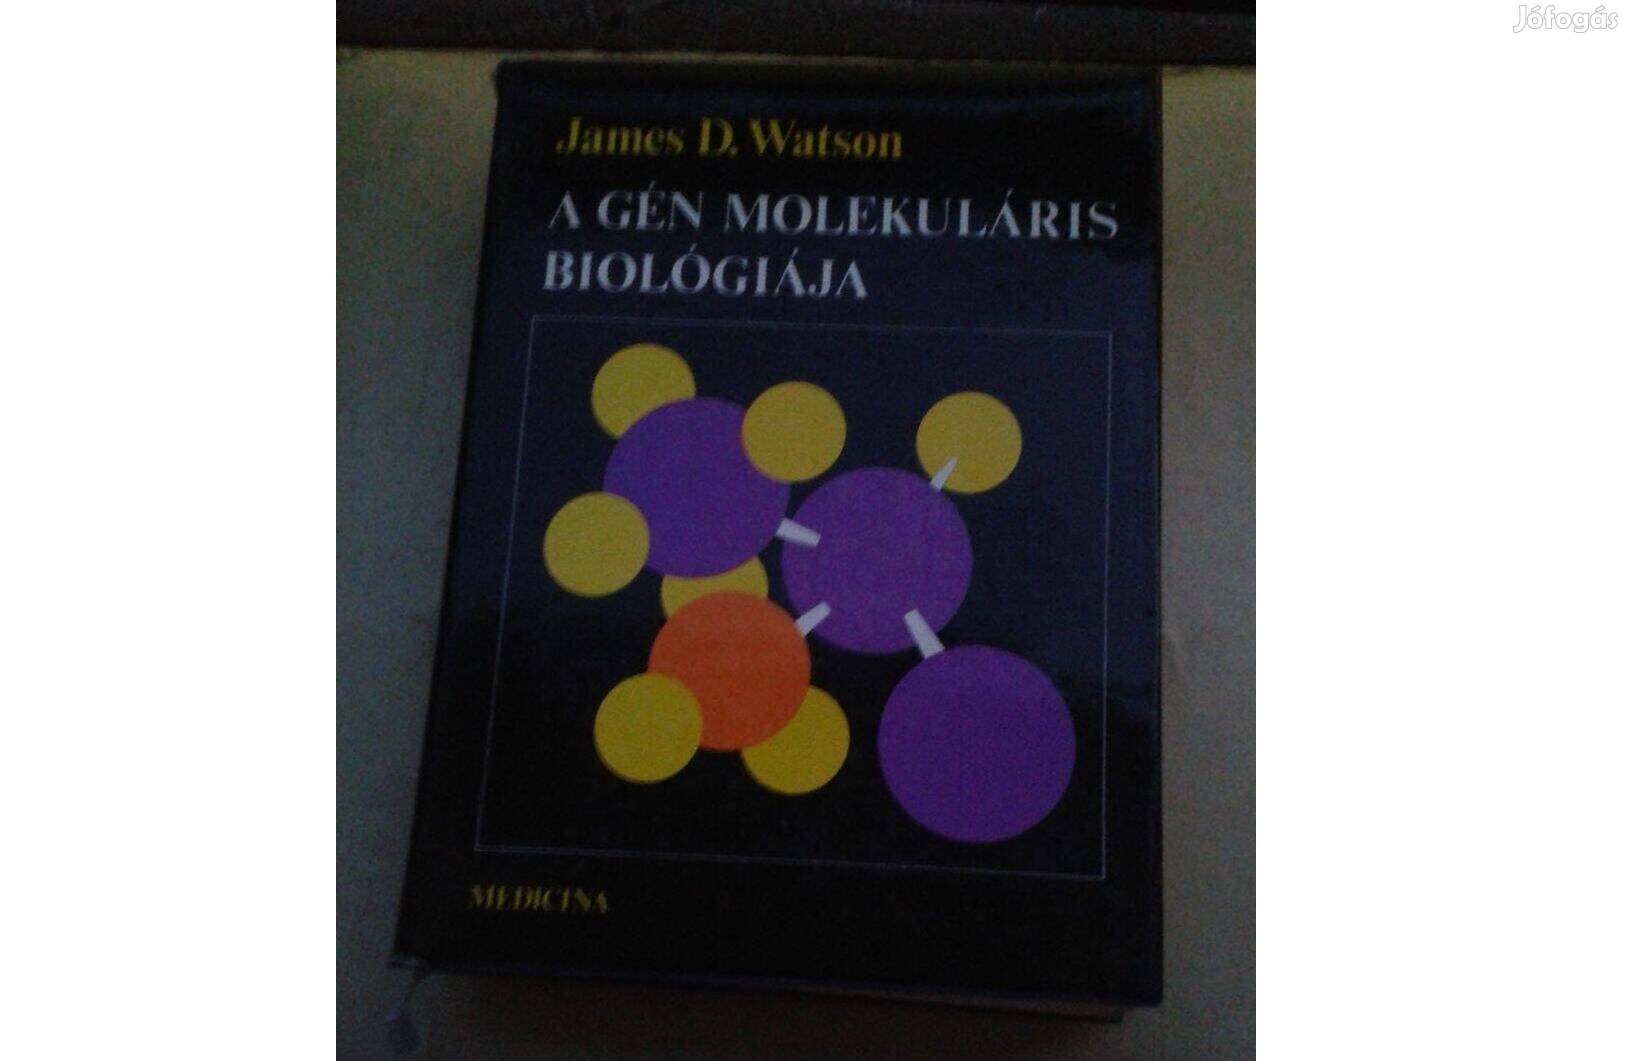 James D. Watson: A gén molekuláris biológiája, tudományos könyv